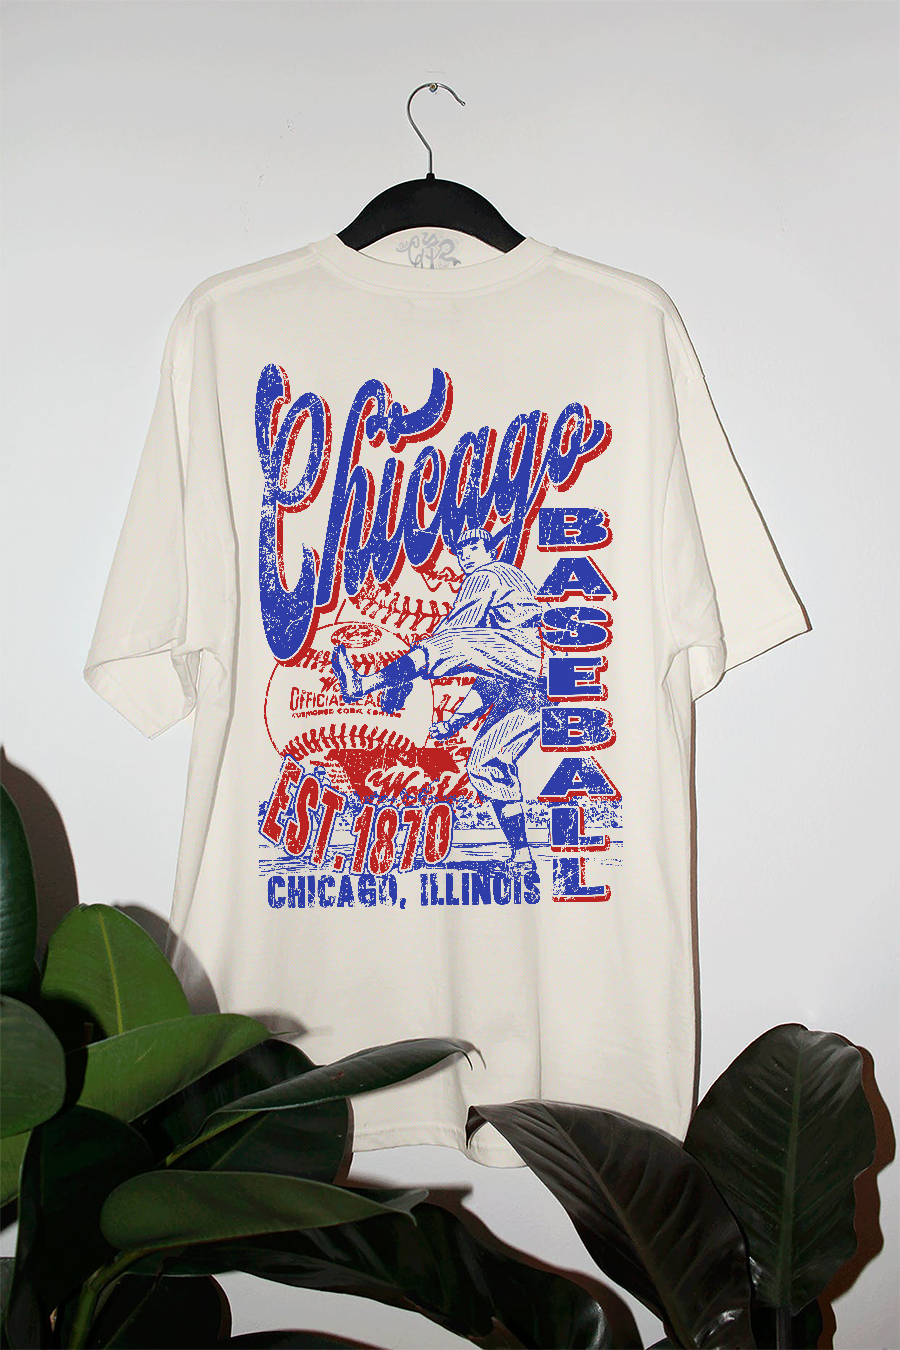 90s-Inspired Chicago Baseball Shirt